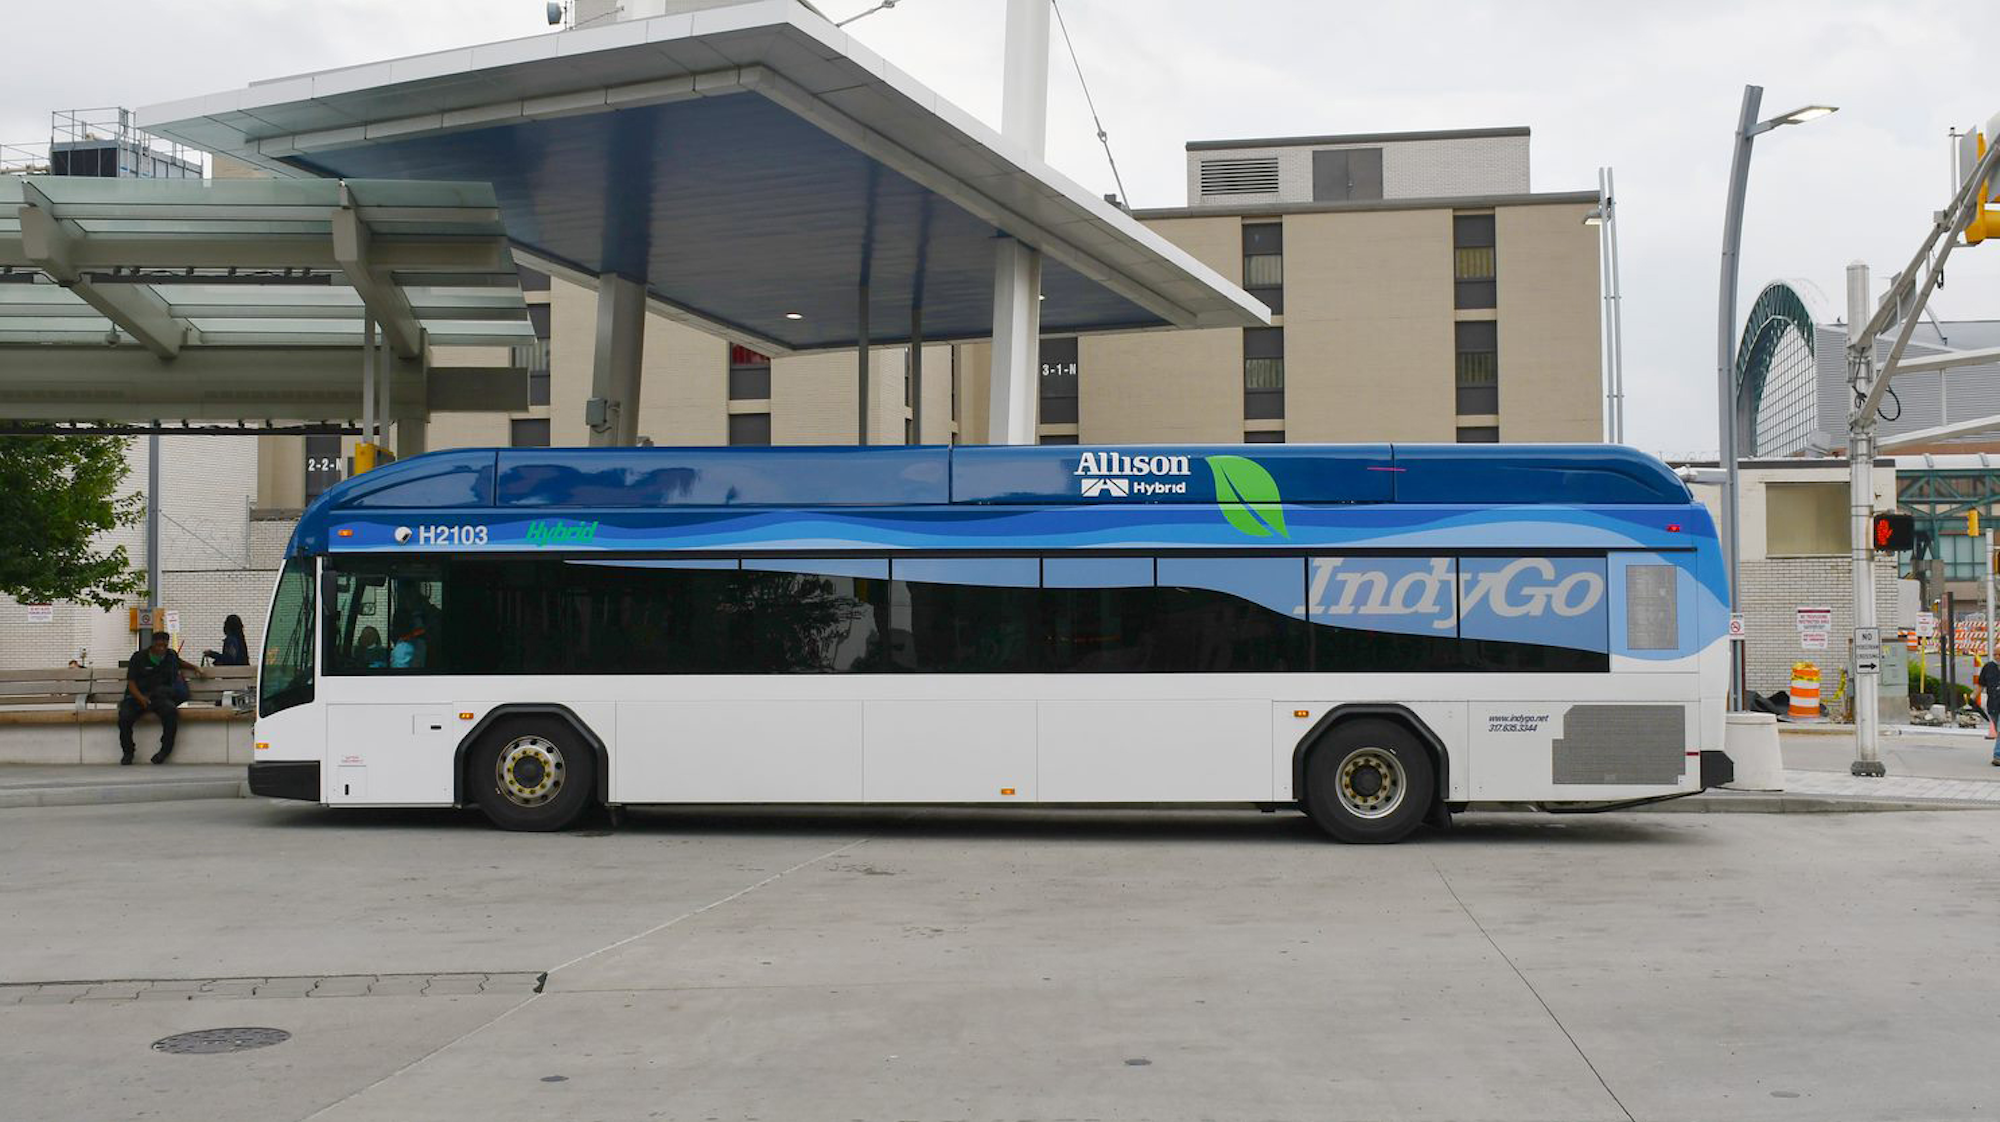 Allison Transmission, IndyGo partner to bring electric hybrid buses to